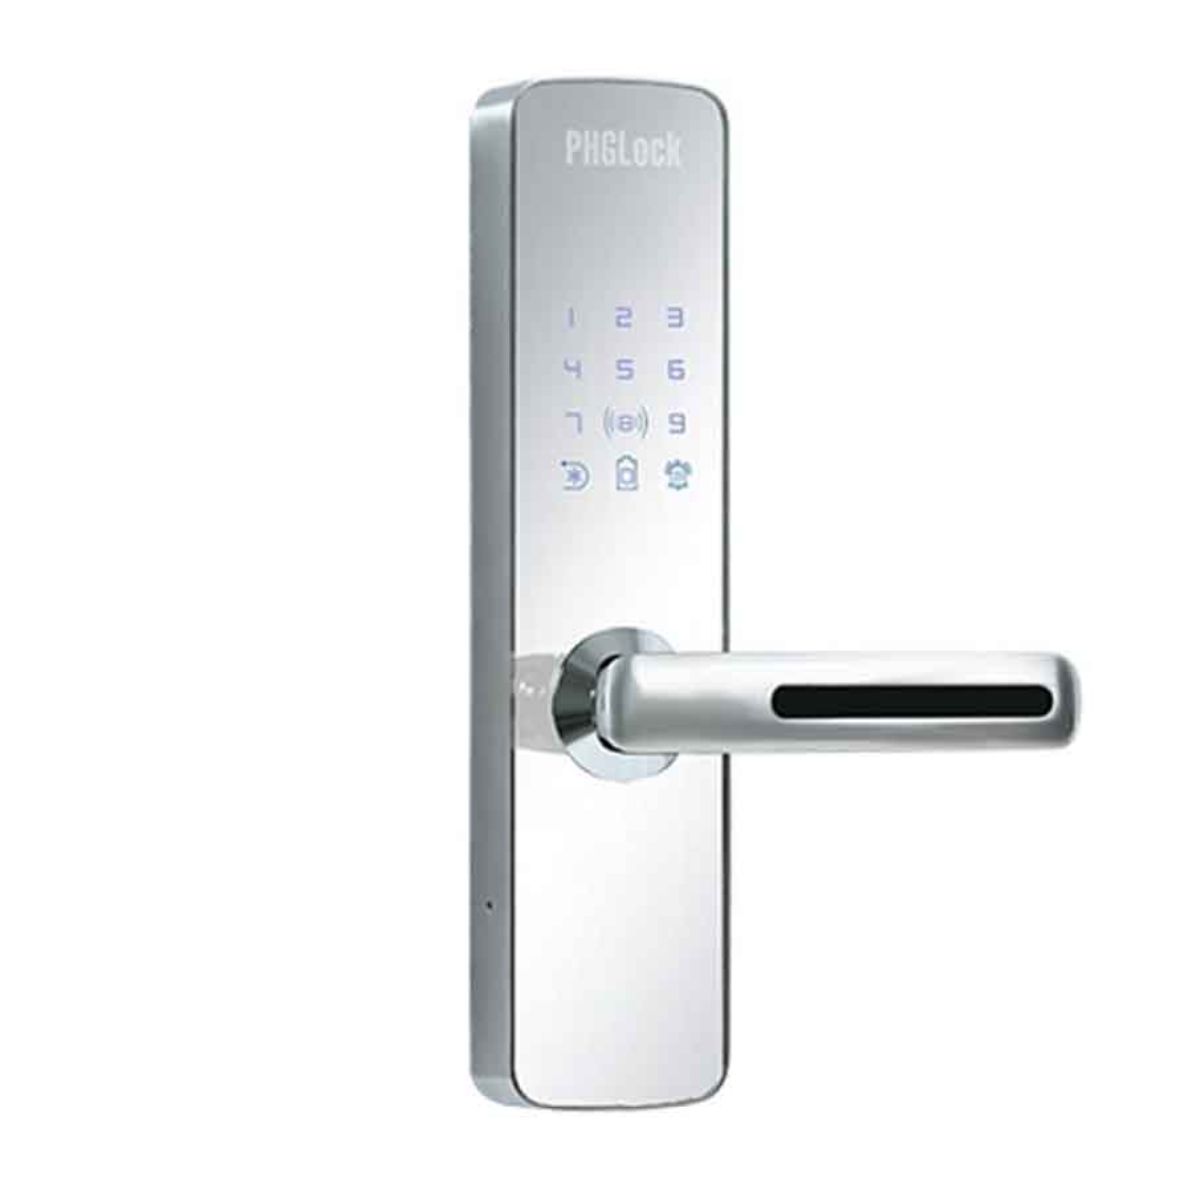 Khóa cửa vân tay cho căn hộ PHGLock FP7153 mica gương màu bạc 256 thẻ MI, 256 mật mã, 100 vân tay, chìa khóa cơ ( tùy chọn remote )